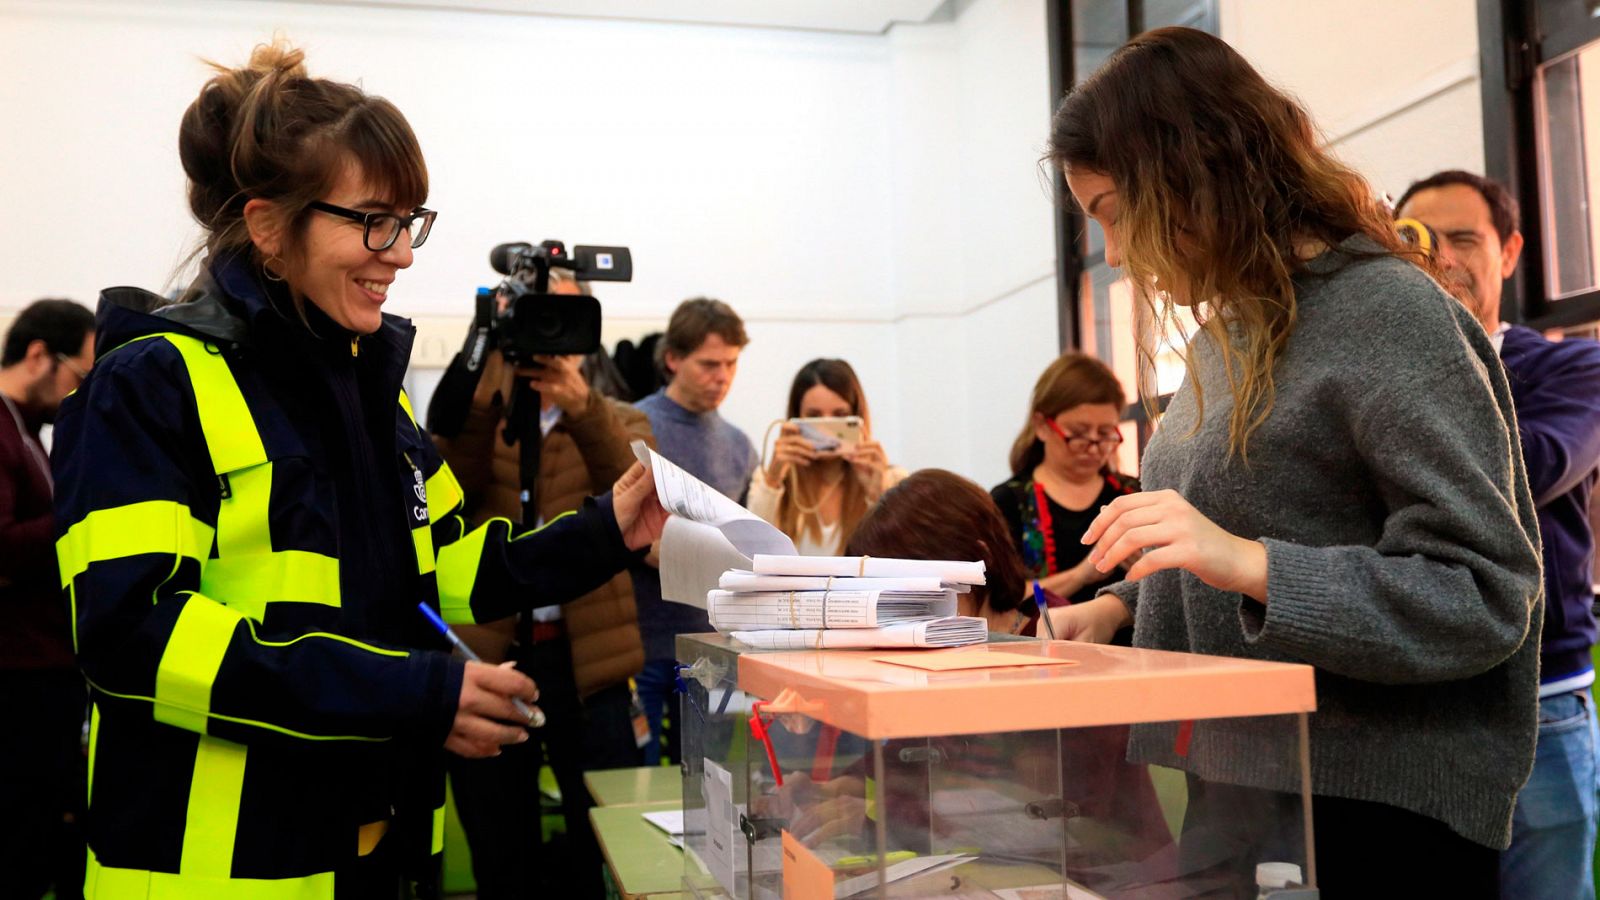 Elecciones Generales 2019 del 10N: Millones de ciudadanos acuden a votar y esperan el "desbloqueo" político tras el 10N - RTVE.es